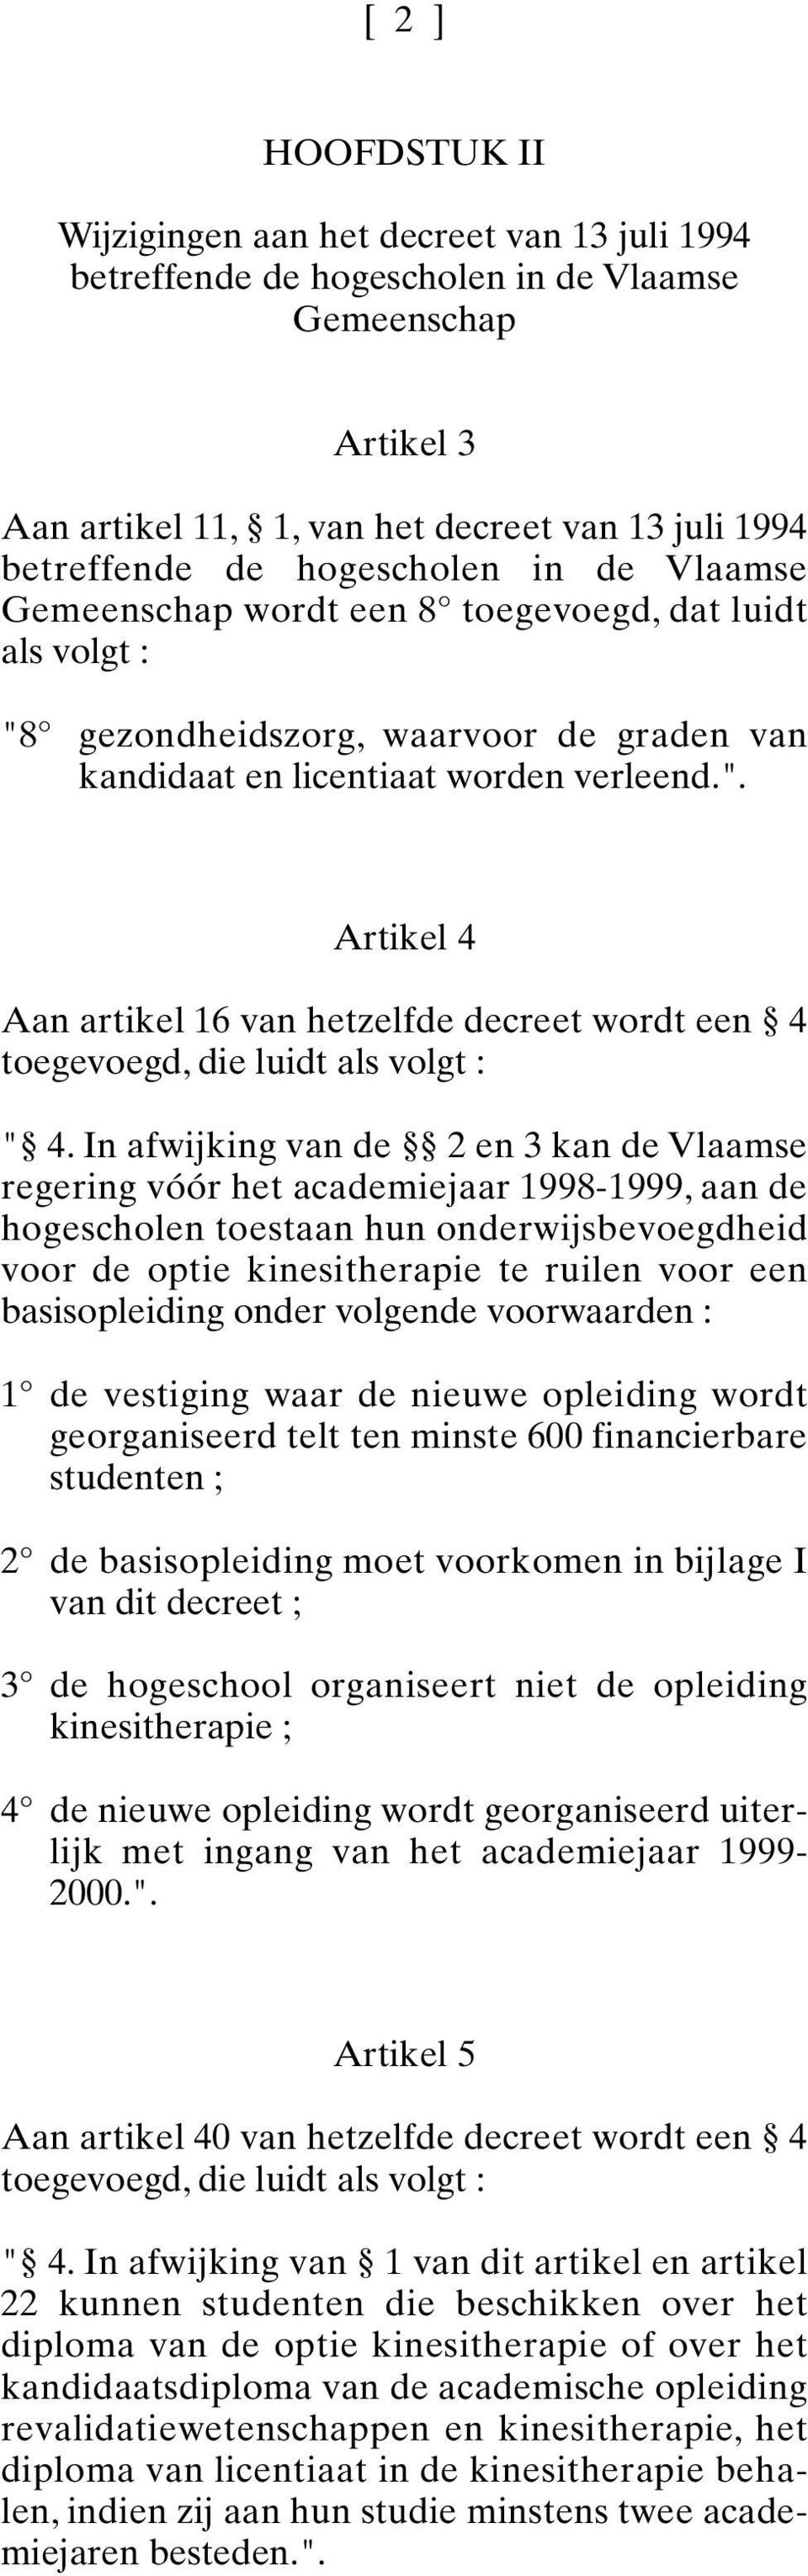 In afwijking van de 2 en 3 kan de Vlaamse regering vóór het academiejaar 1998-1999, aan de hogescholen toestaan hun onderwijsbevoegdheid voor de optie kinesitherapie te ruilen voor een basisopleiding